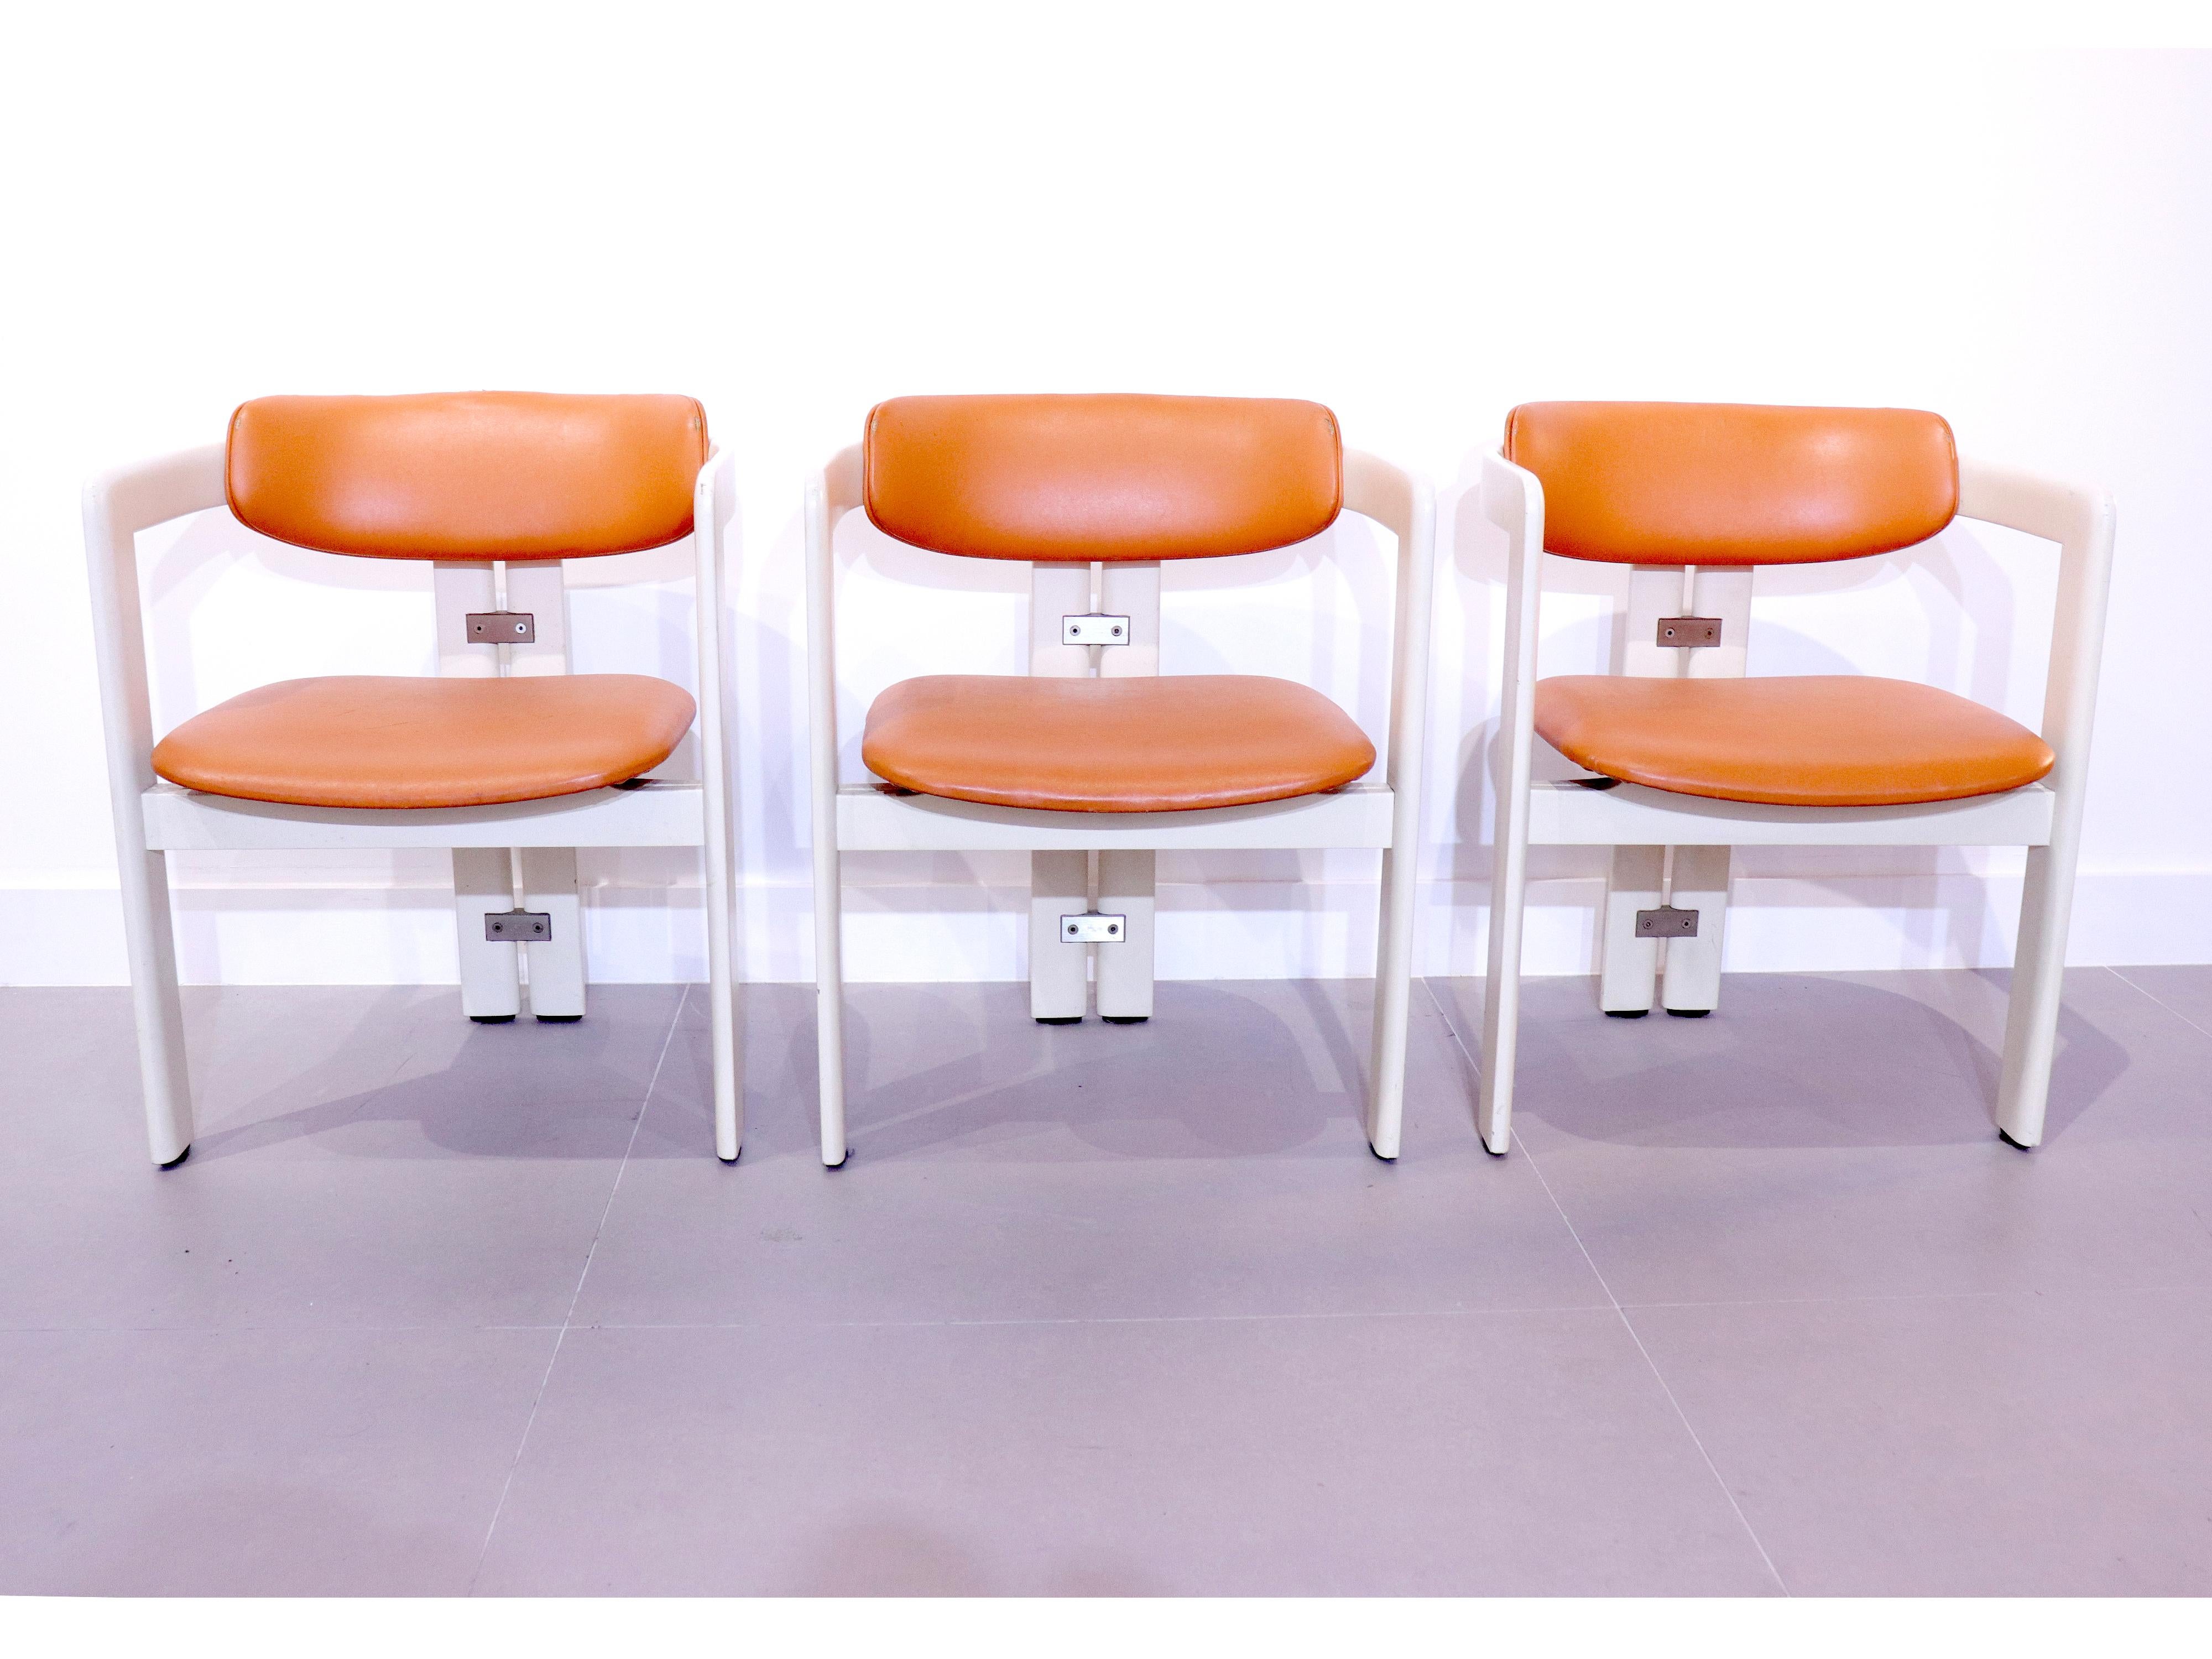 Rare ensemble de six chaises Pamplona par Augusto Savini pour Pozzi, Italie 1965.
Ces fauteuils sont en bois laqué blanc avec leur garniture orange d'origine.
Un design iconique et immédiatement reconnaissable, simpliste mais fort en forme avec leur